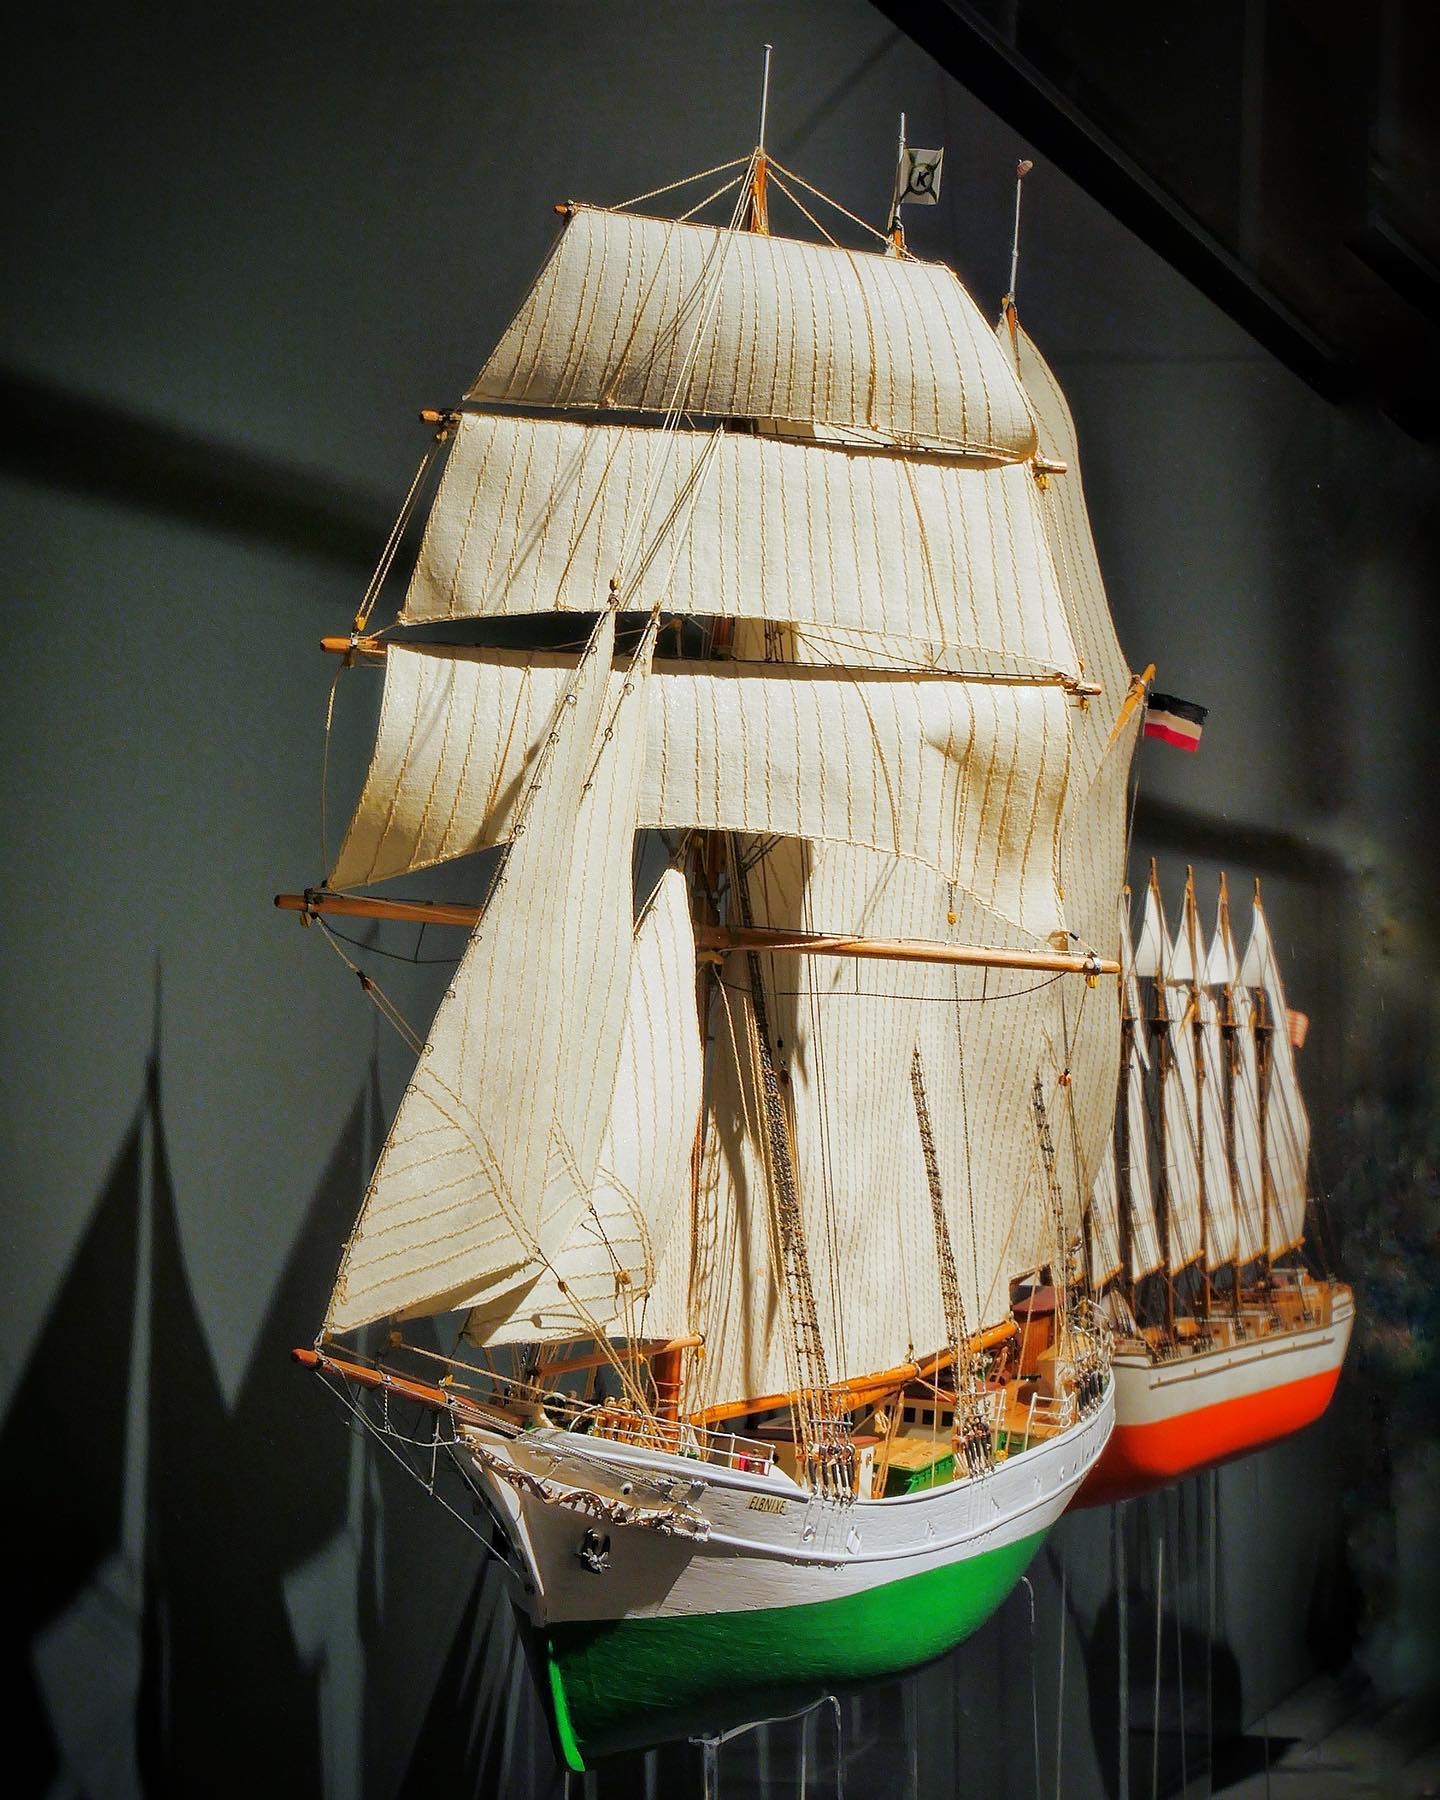 Das Segelfrachtschiff Elbnixe (1922-1993?). Dieses schöne Modell der „Elbnixe“ wurde von A. Bernhardt im Maßstab 1:100 gebaut und steht am Ende unserer Ausstellung über moderne Segelschiffe auf Deck 2 des Museums. 